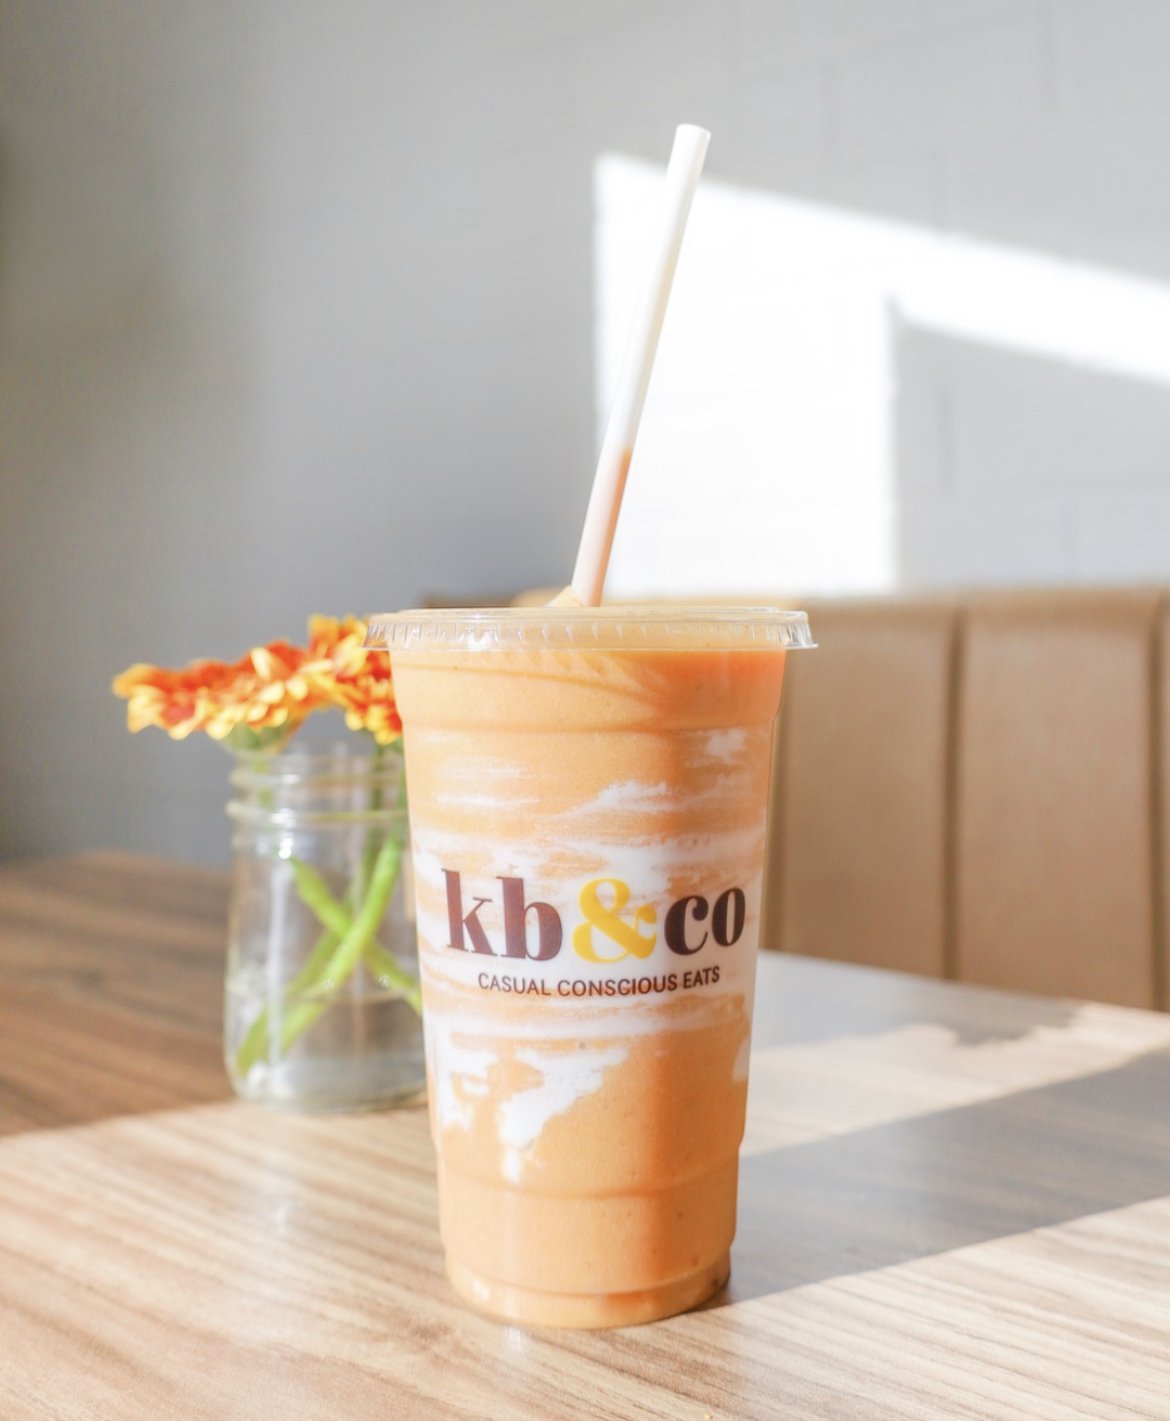 kb&co-sherwood-park-plant-based-cafe-smoothie.jpg